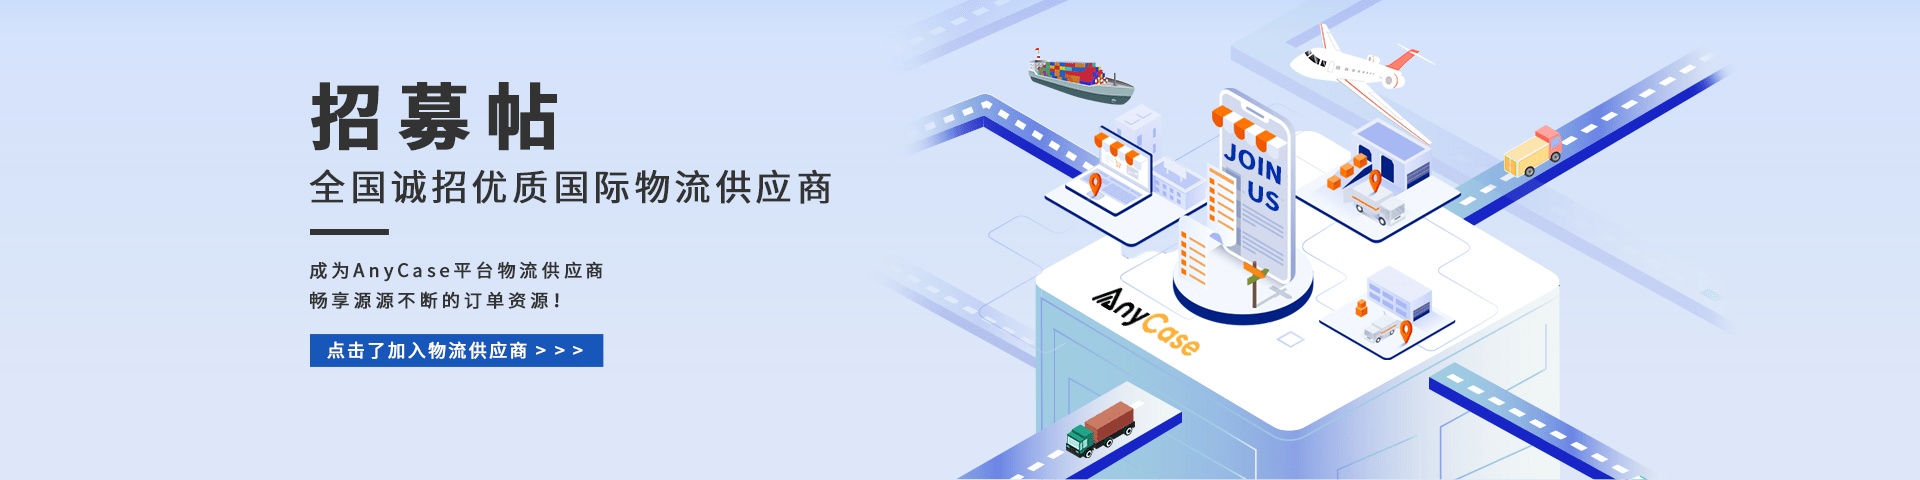 上海箱讯科技公司